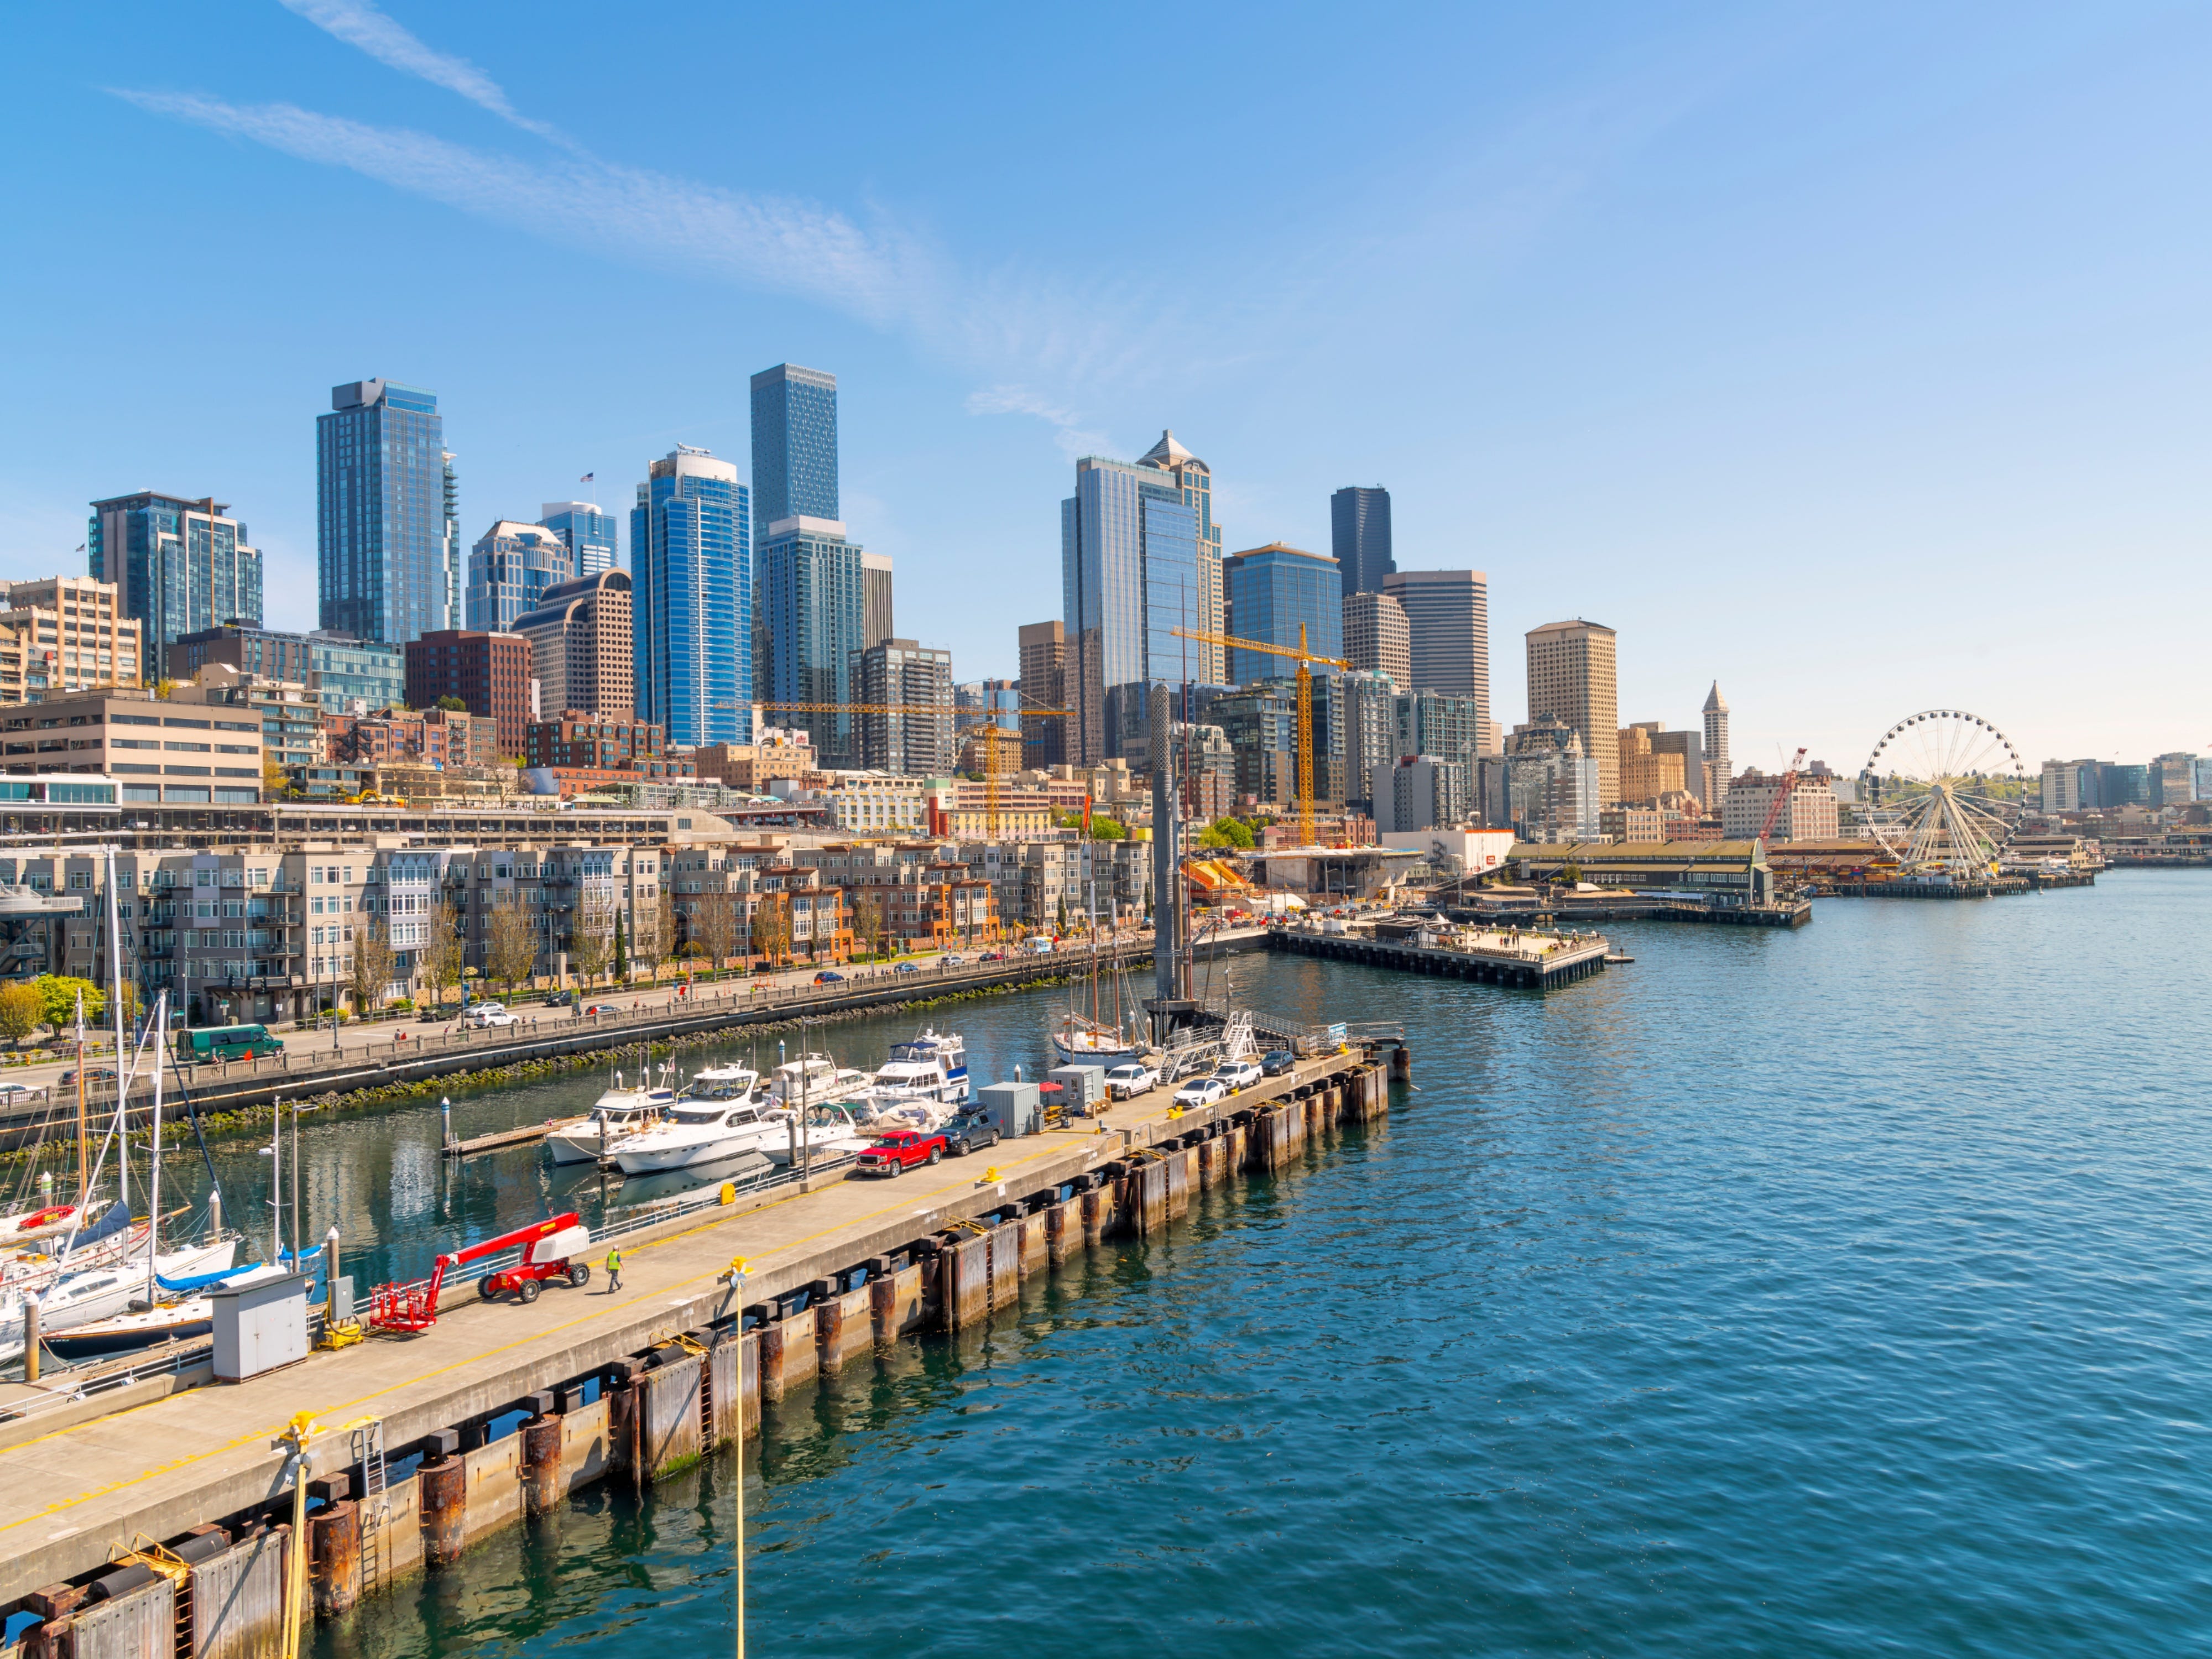 Blick auf die Skyline und das Touristengebiet am Hafen, einschließlich des Great Wheel, von einem Kreuzfahrtschiff im Puget Sound in Seattle, Washington.